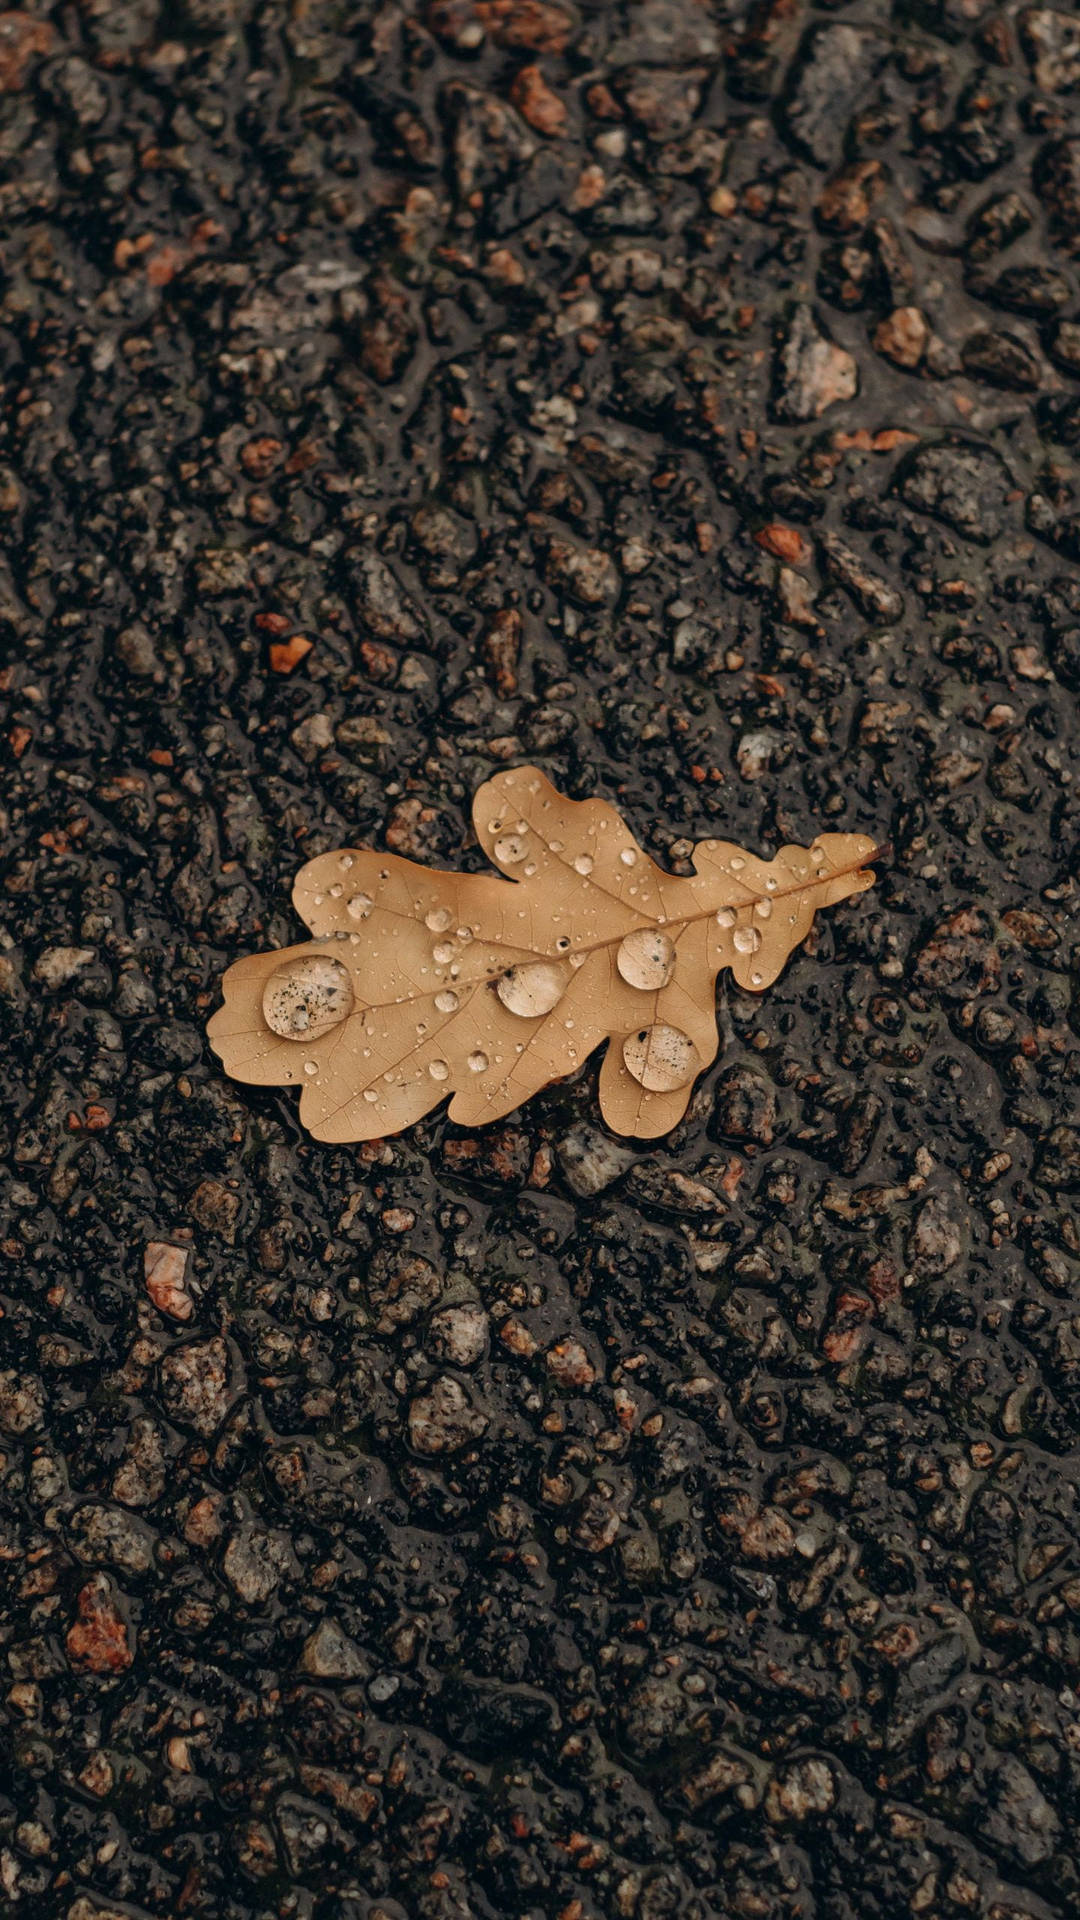 Samsung A51 Wet Autumn Leaf On Ground